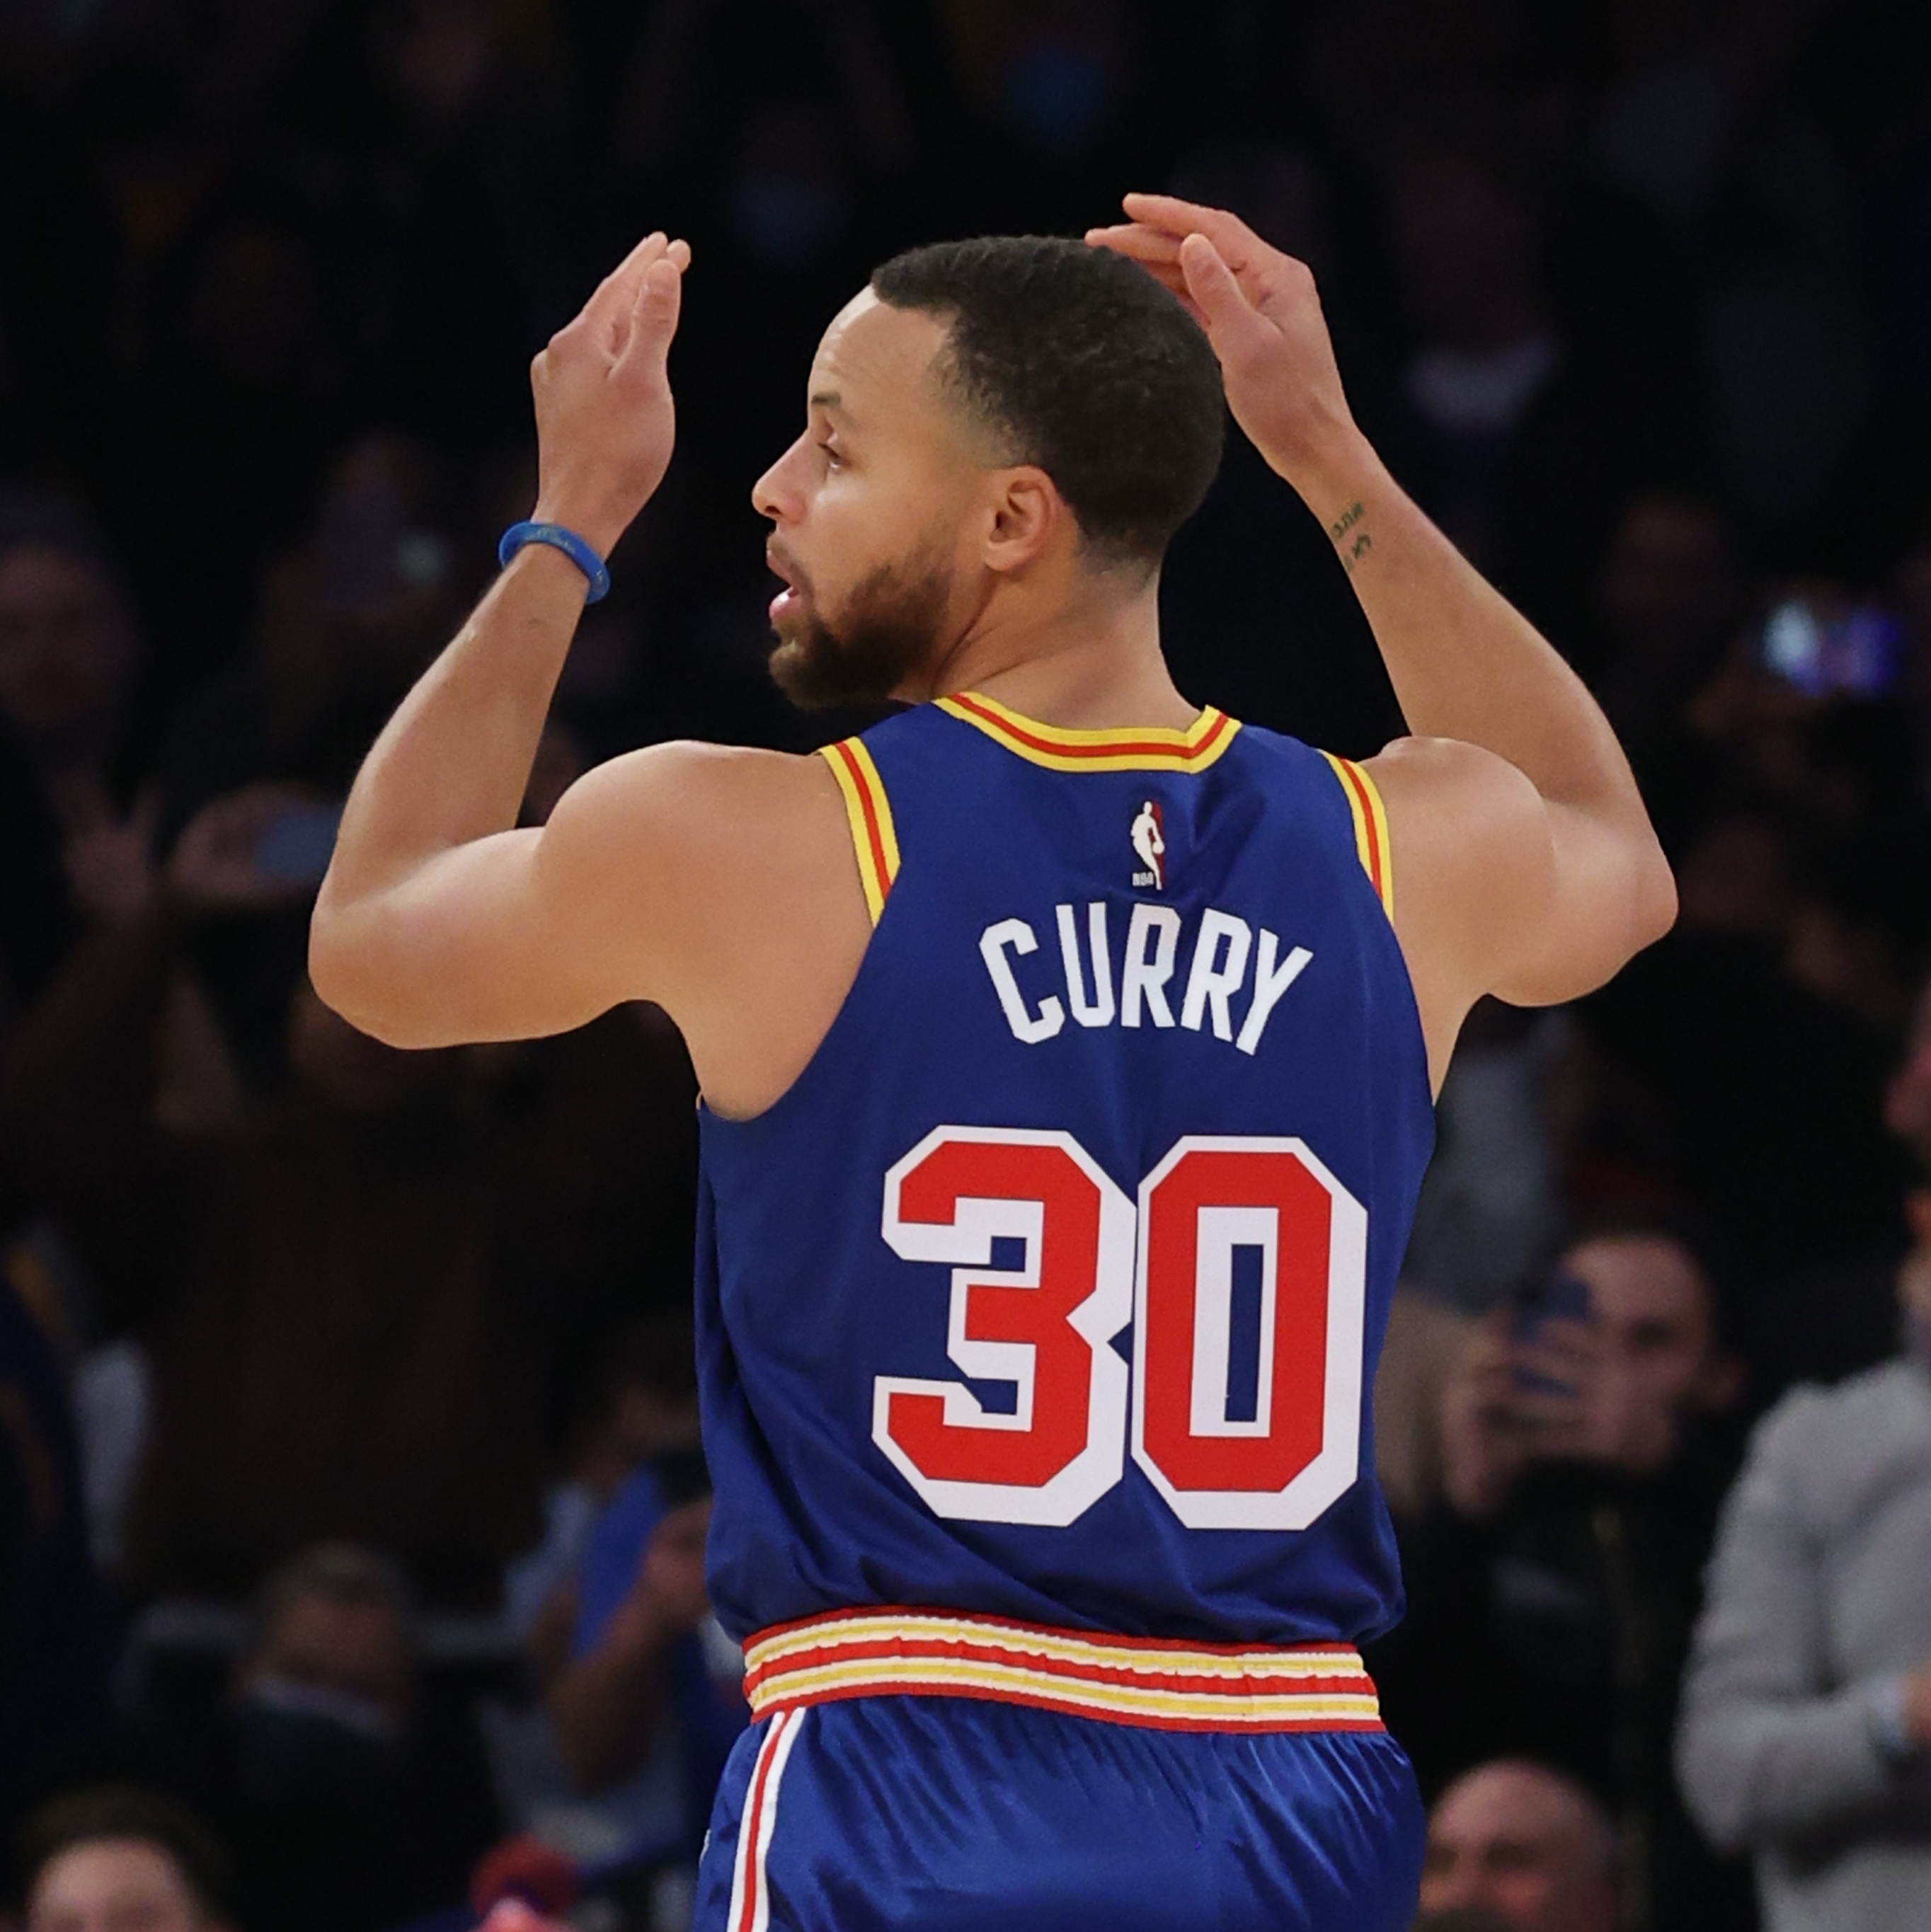 Os maiores nomes da NBA: Stephen Curry - bet365